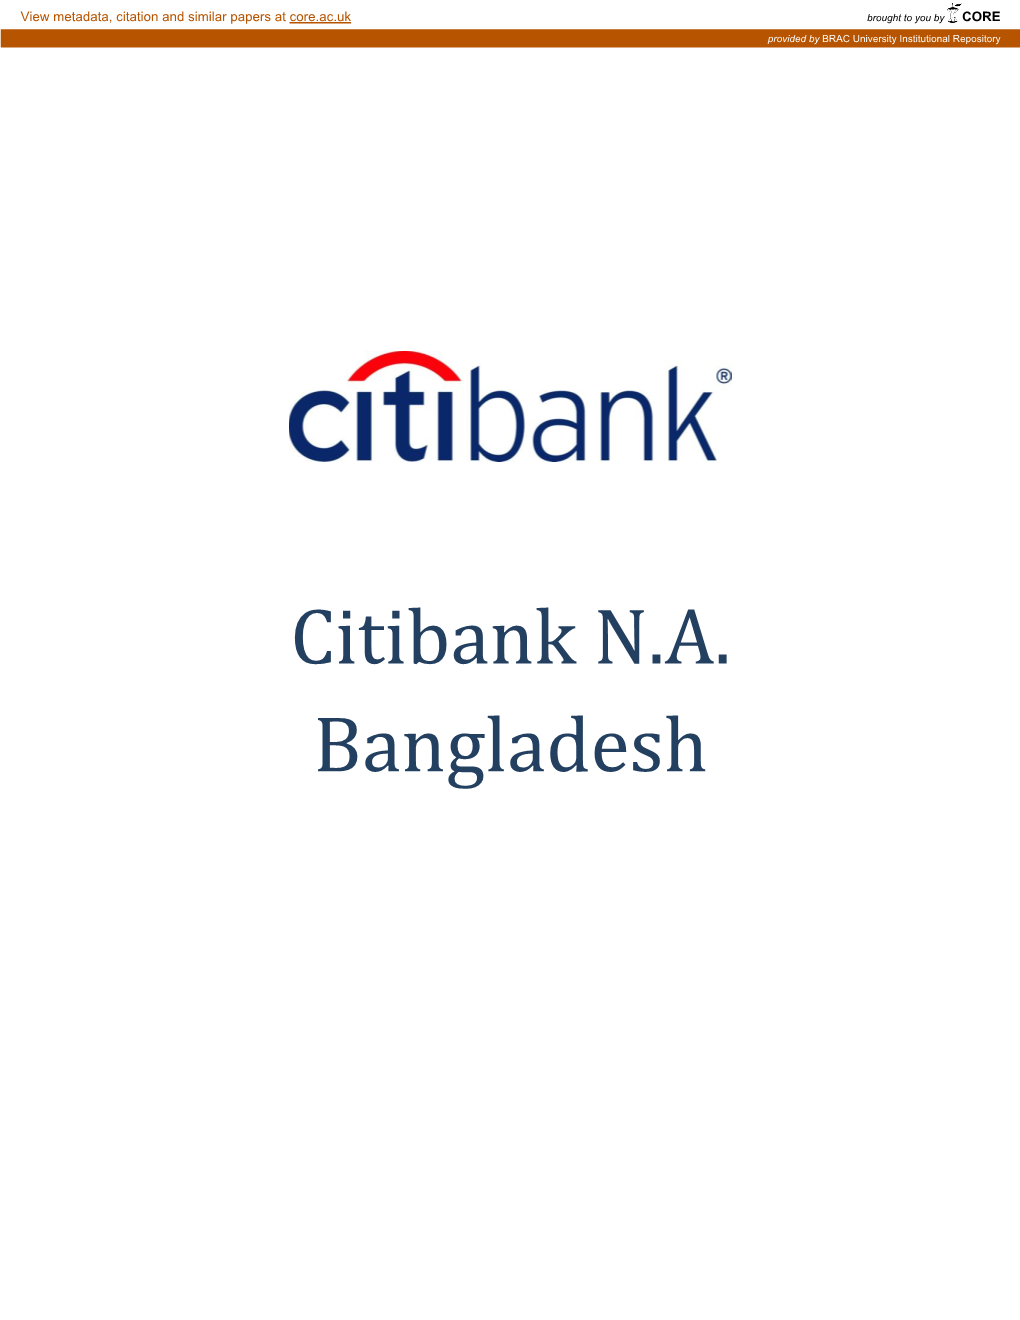 Citibank N.A. Bangladesh